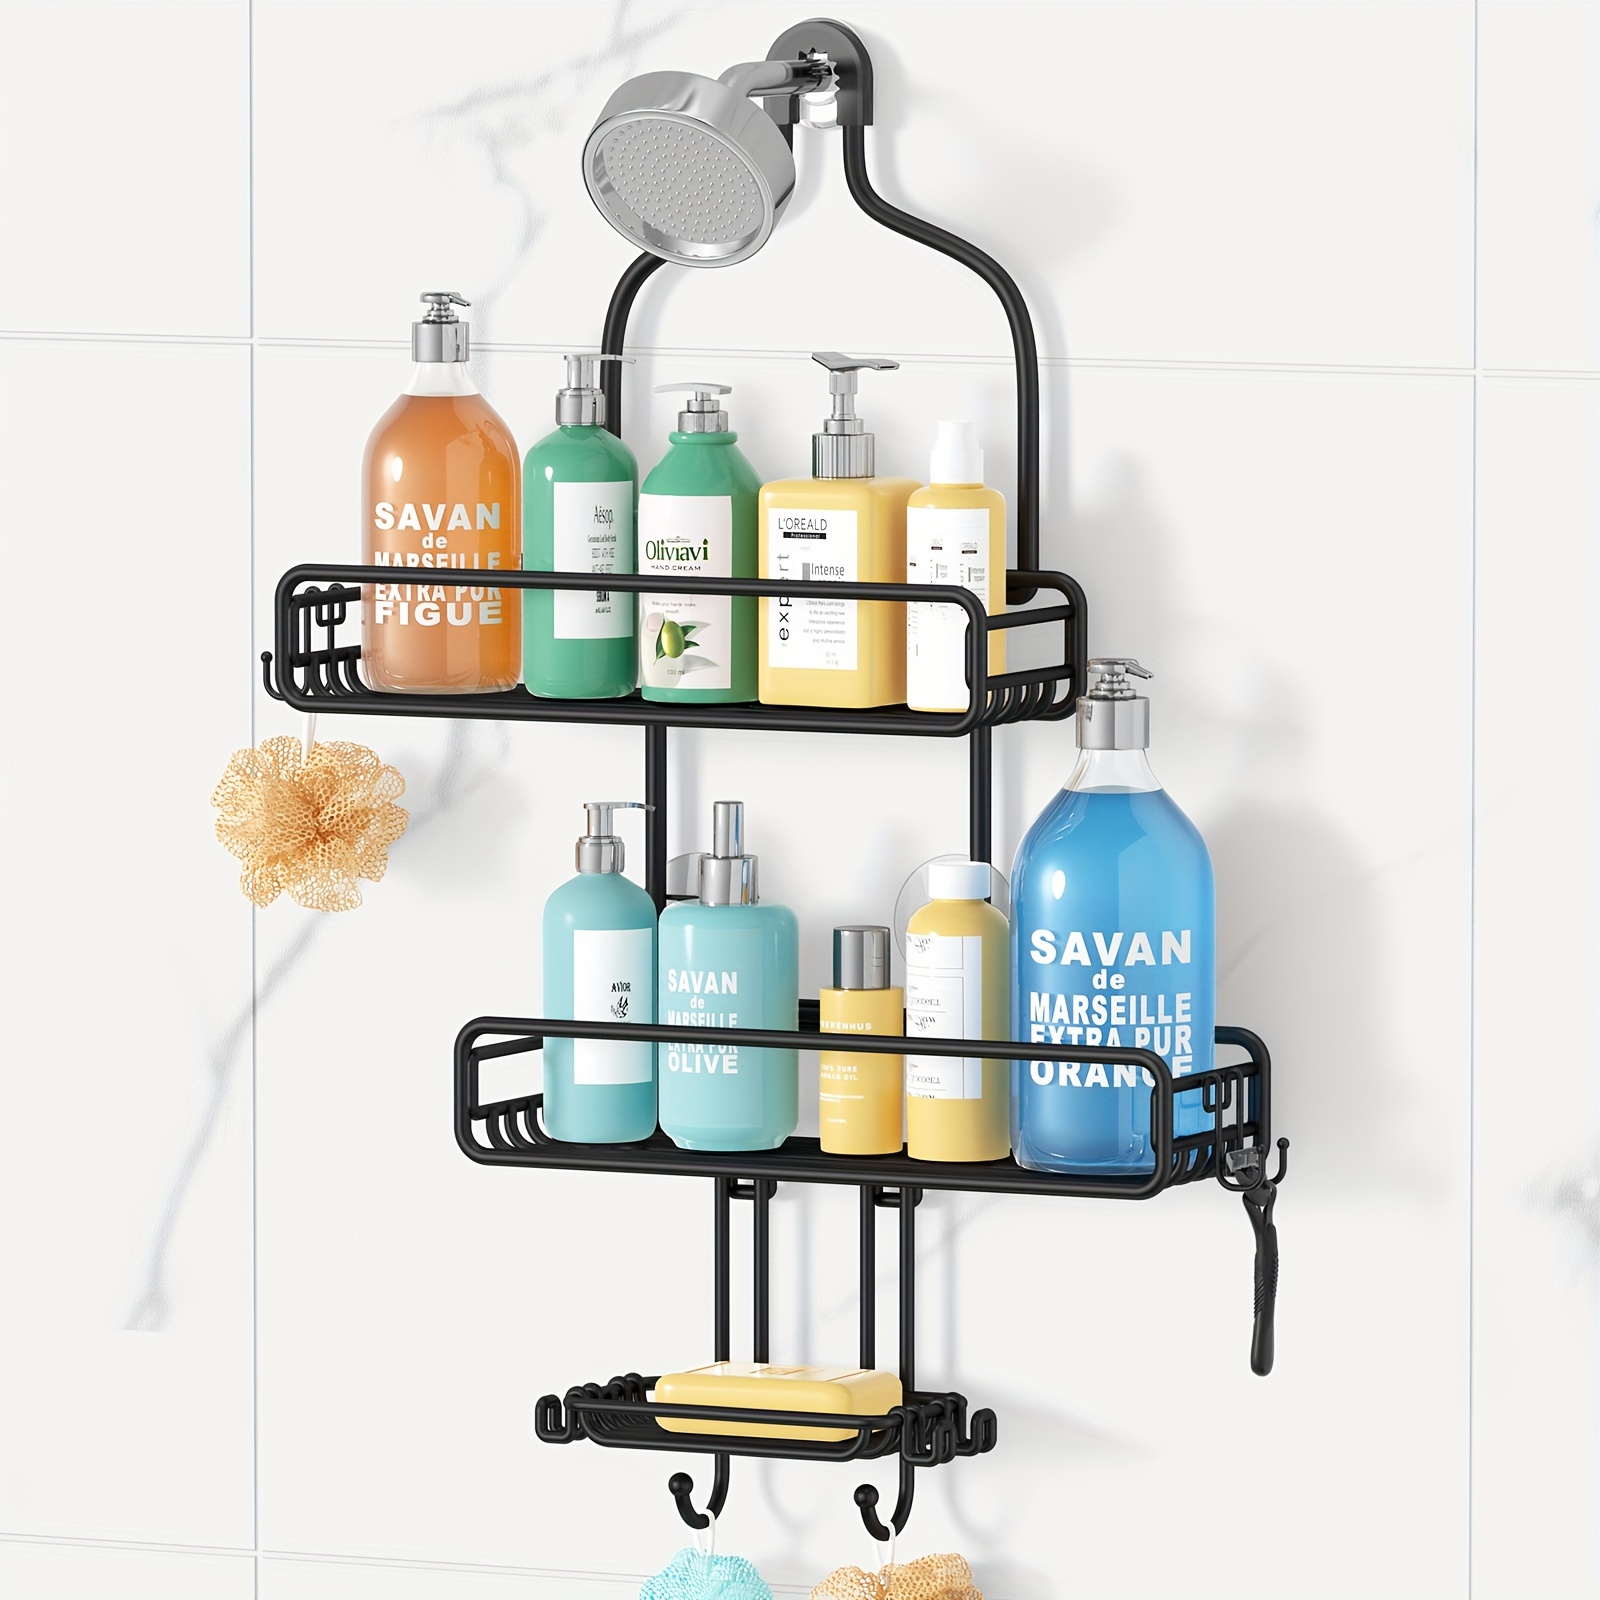 

Hanging Shower Over Shower : Adjustable Large Shower Organizer With Soap Holder - Rustproof Bathroom Shelf Shampoo Storage Rack - 4 Movable Hooks For Razor Loofah Black